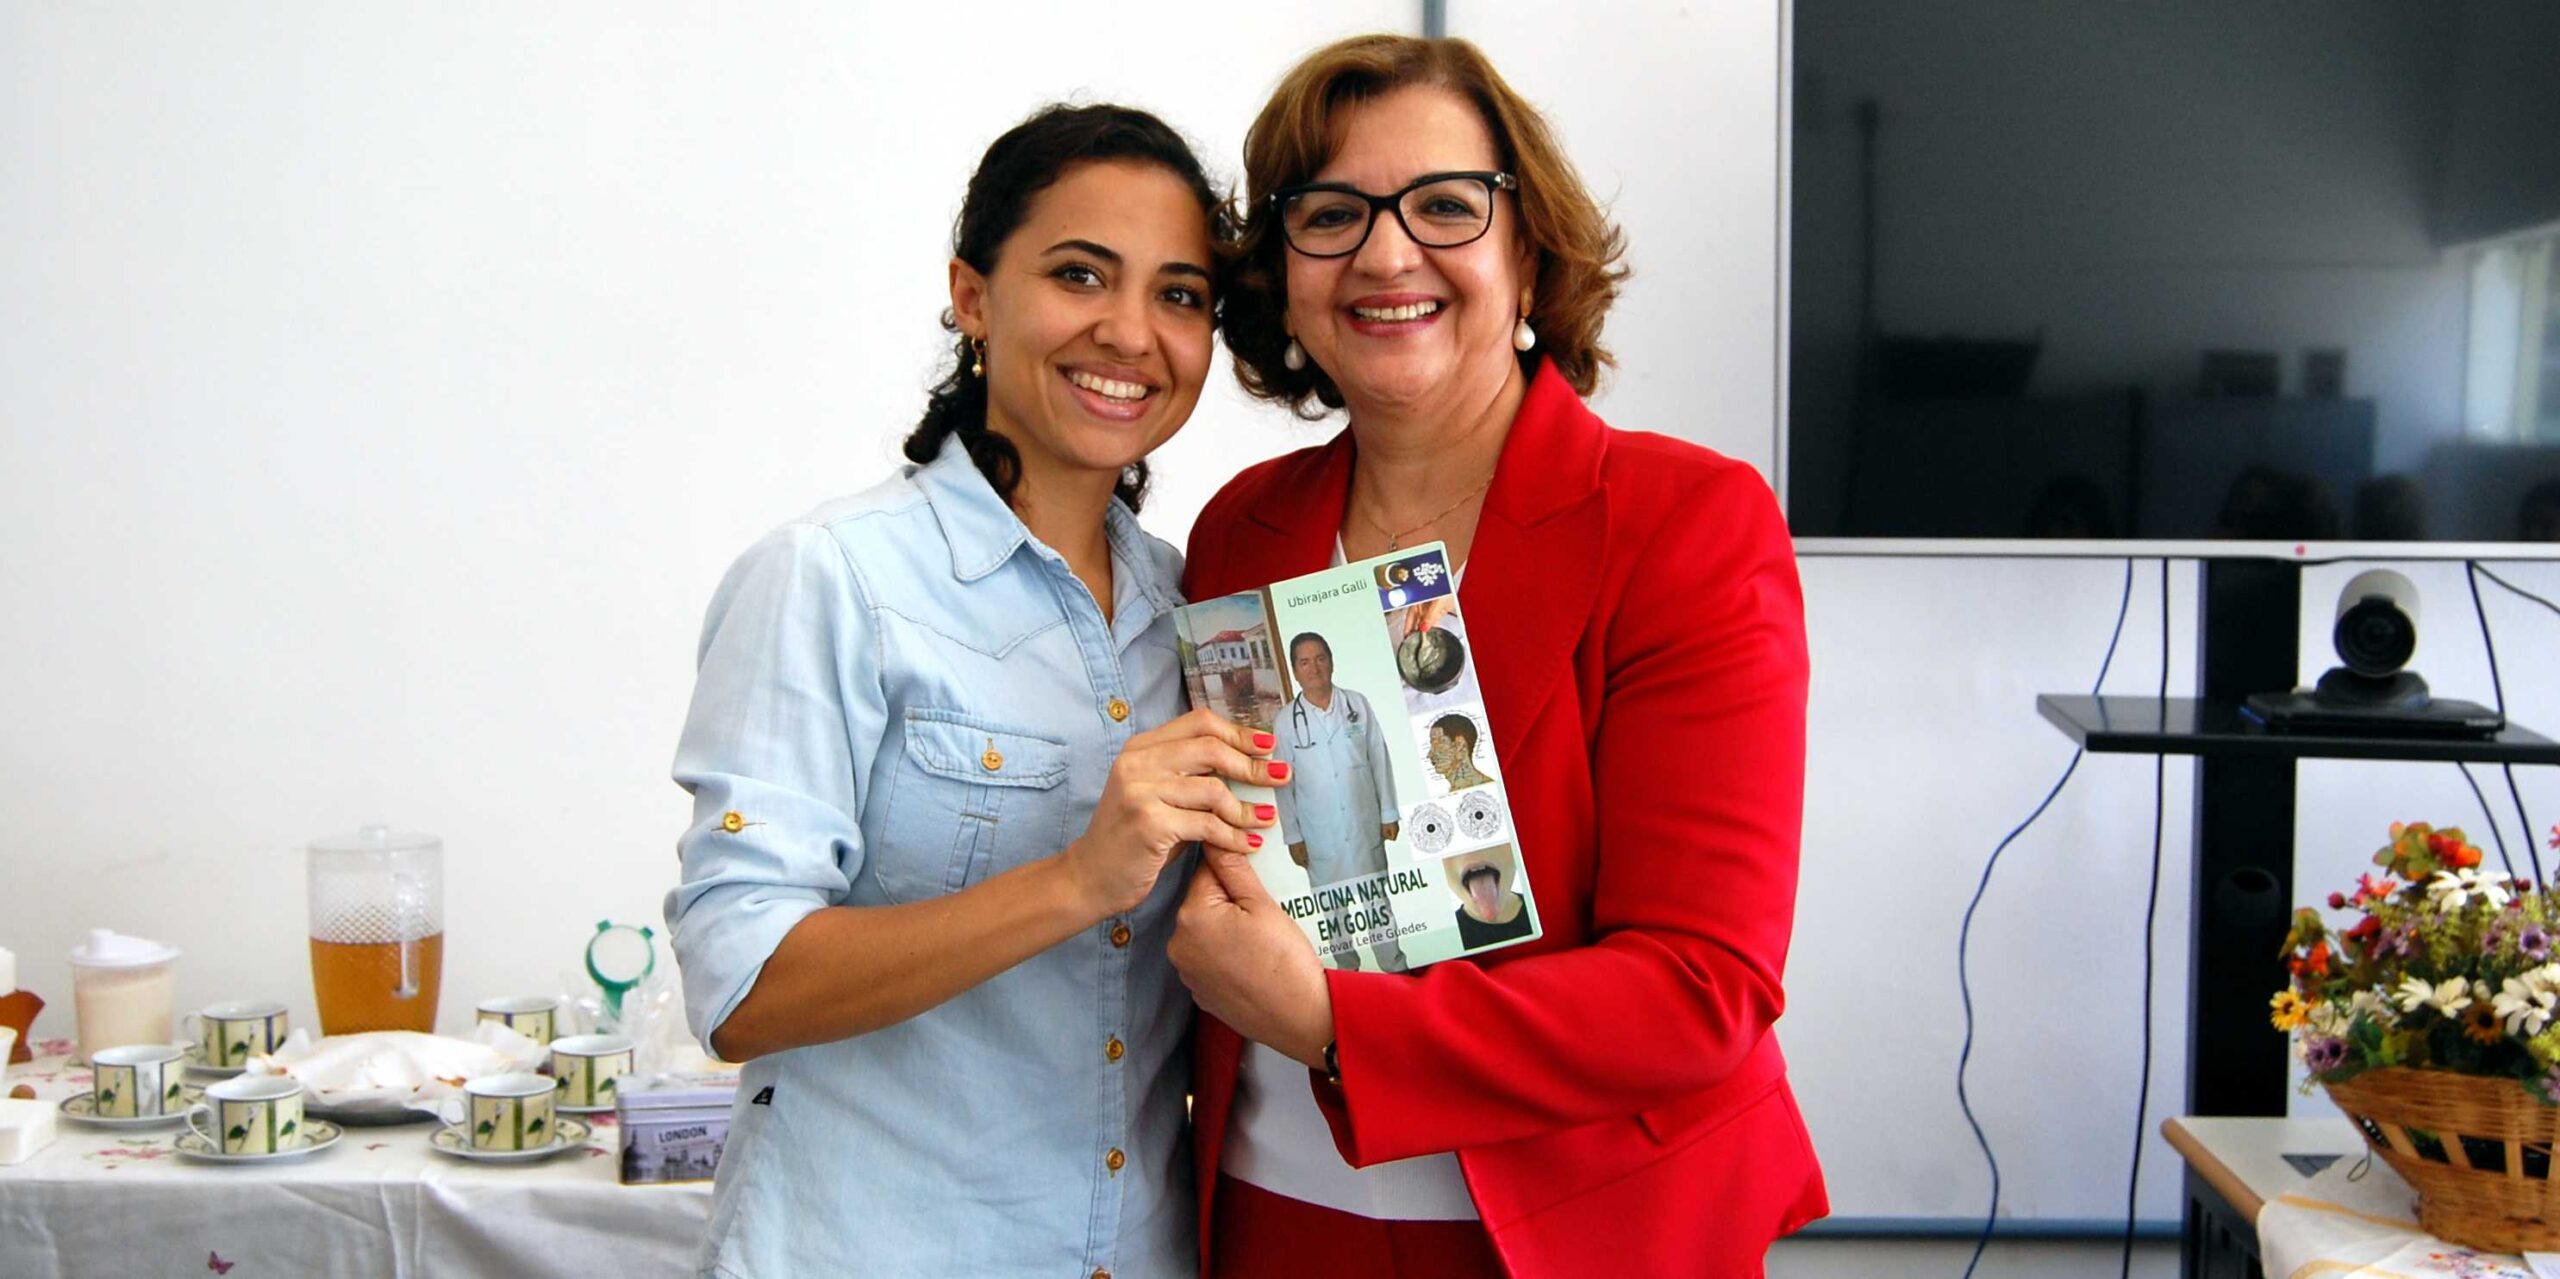 Escola Estadual de saúde pública Cândido Santiago comemora dia da mulher